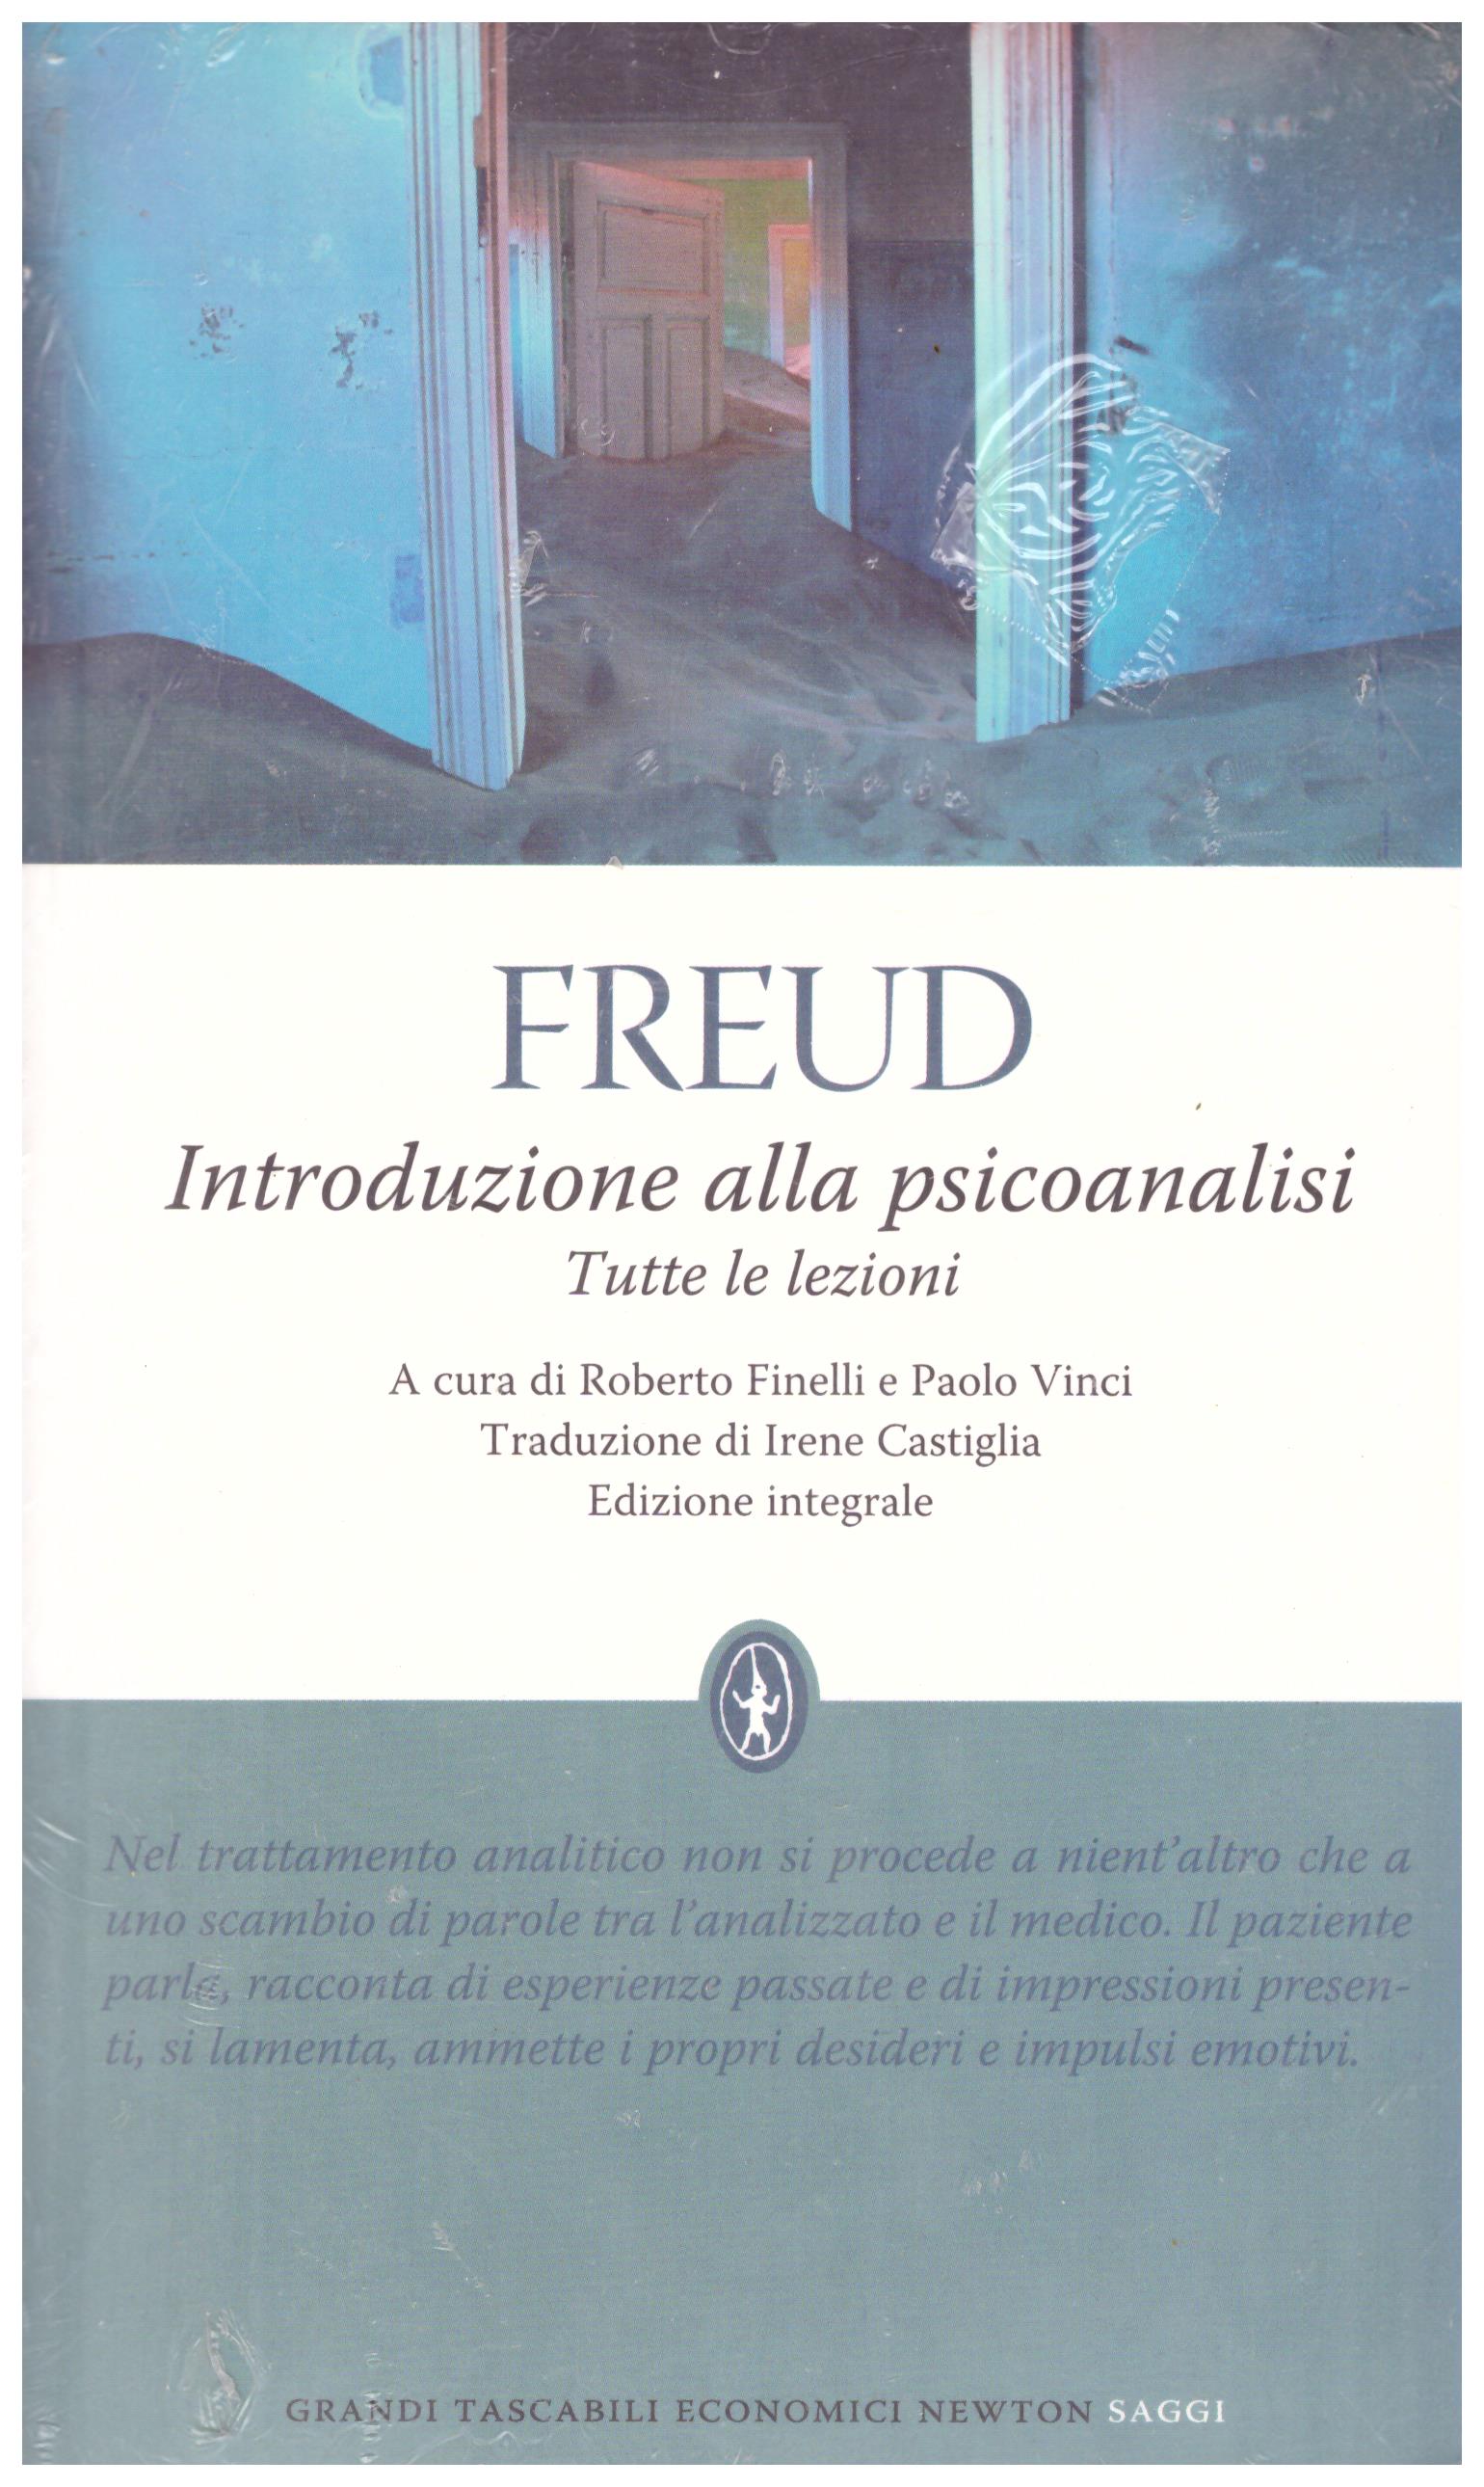 Titolo: Introduzione alla psicanalisi, tutte le lezioni Autore: Freud Editore: Newton and Compton